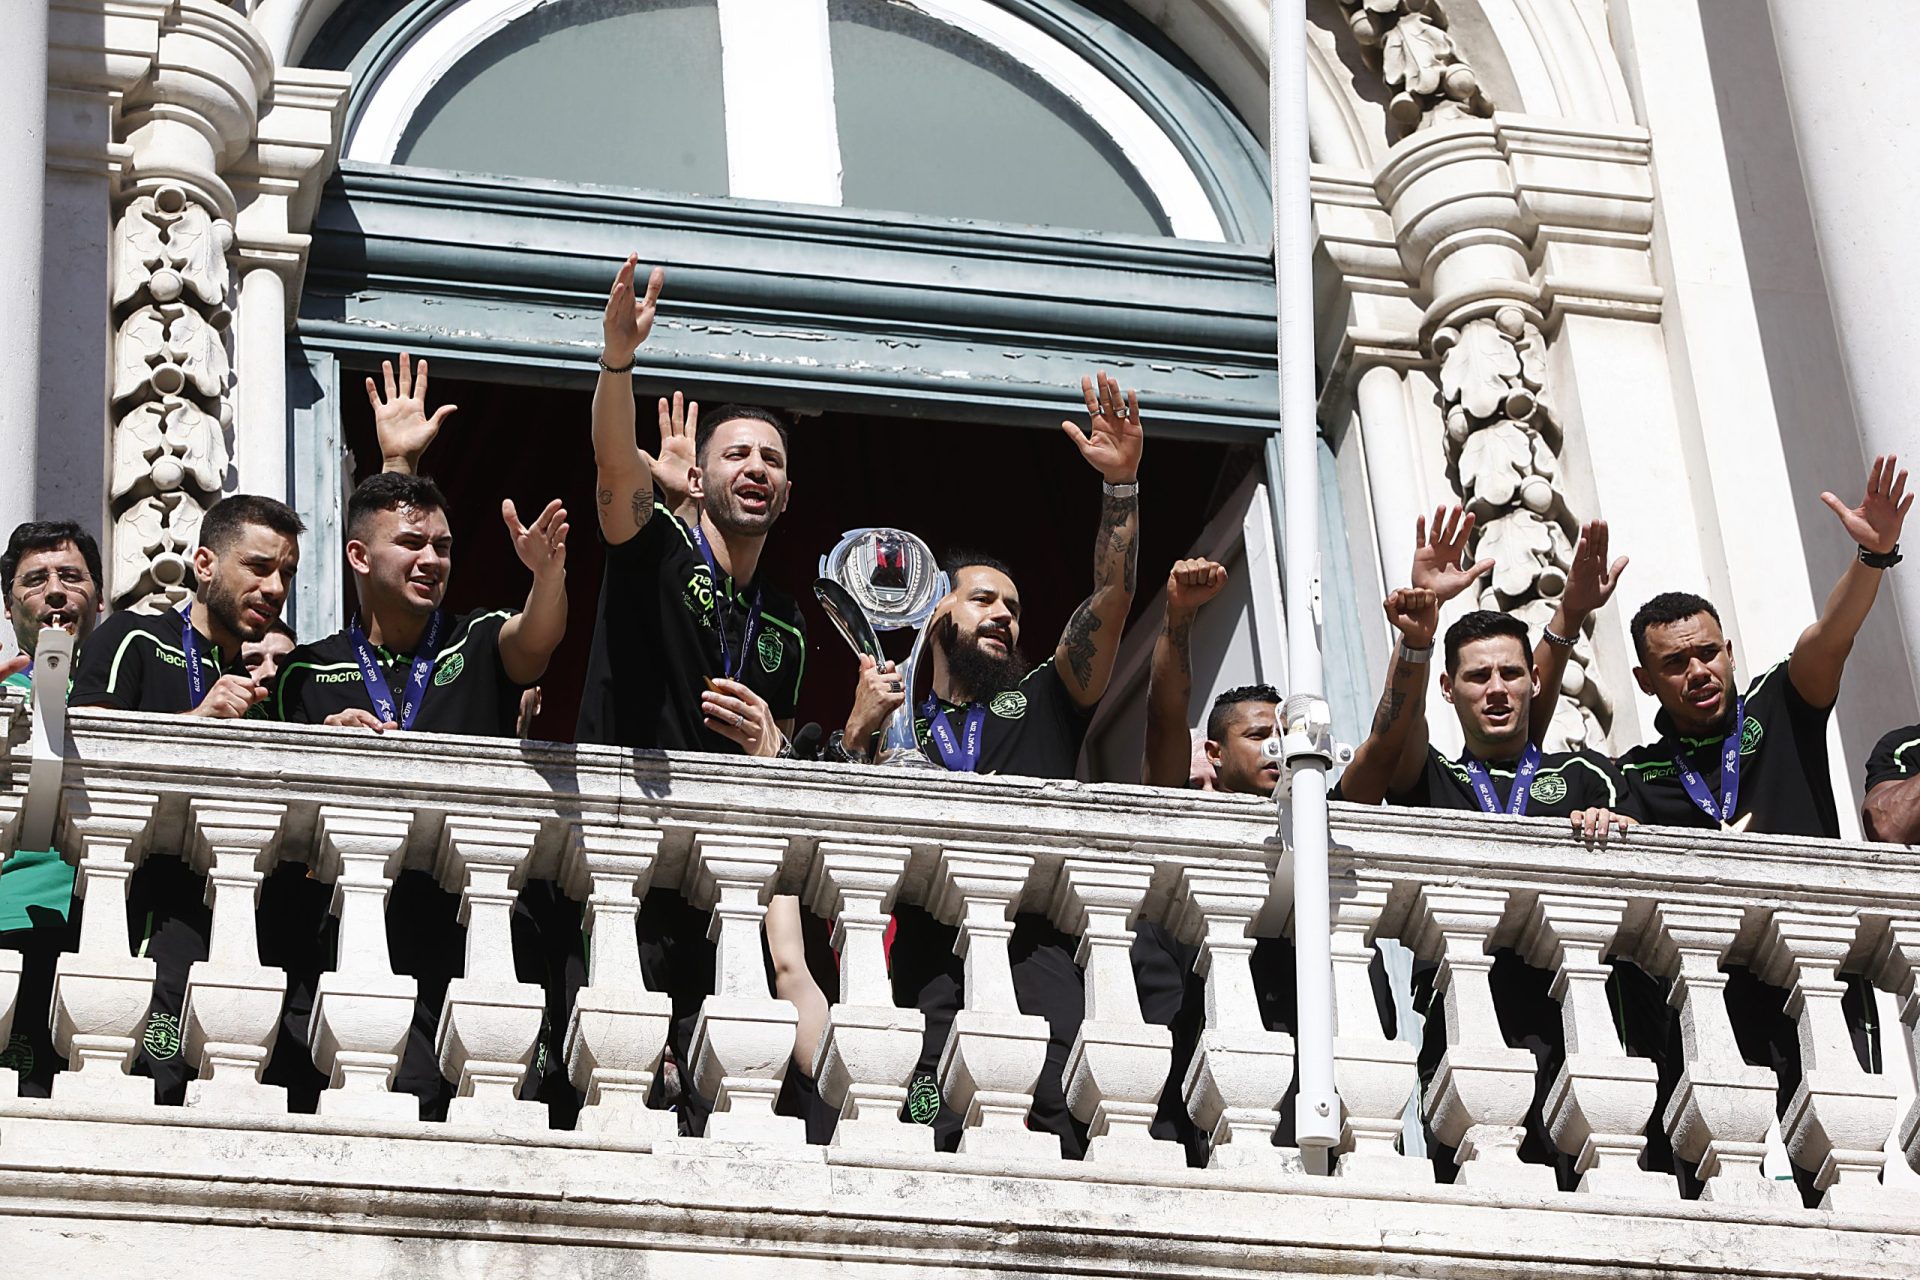 Campeões europeus de futsal recebidos com euforia em Lisboa | Fotogaleria